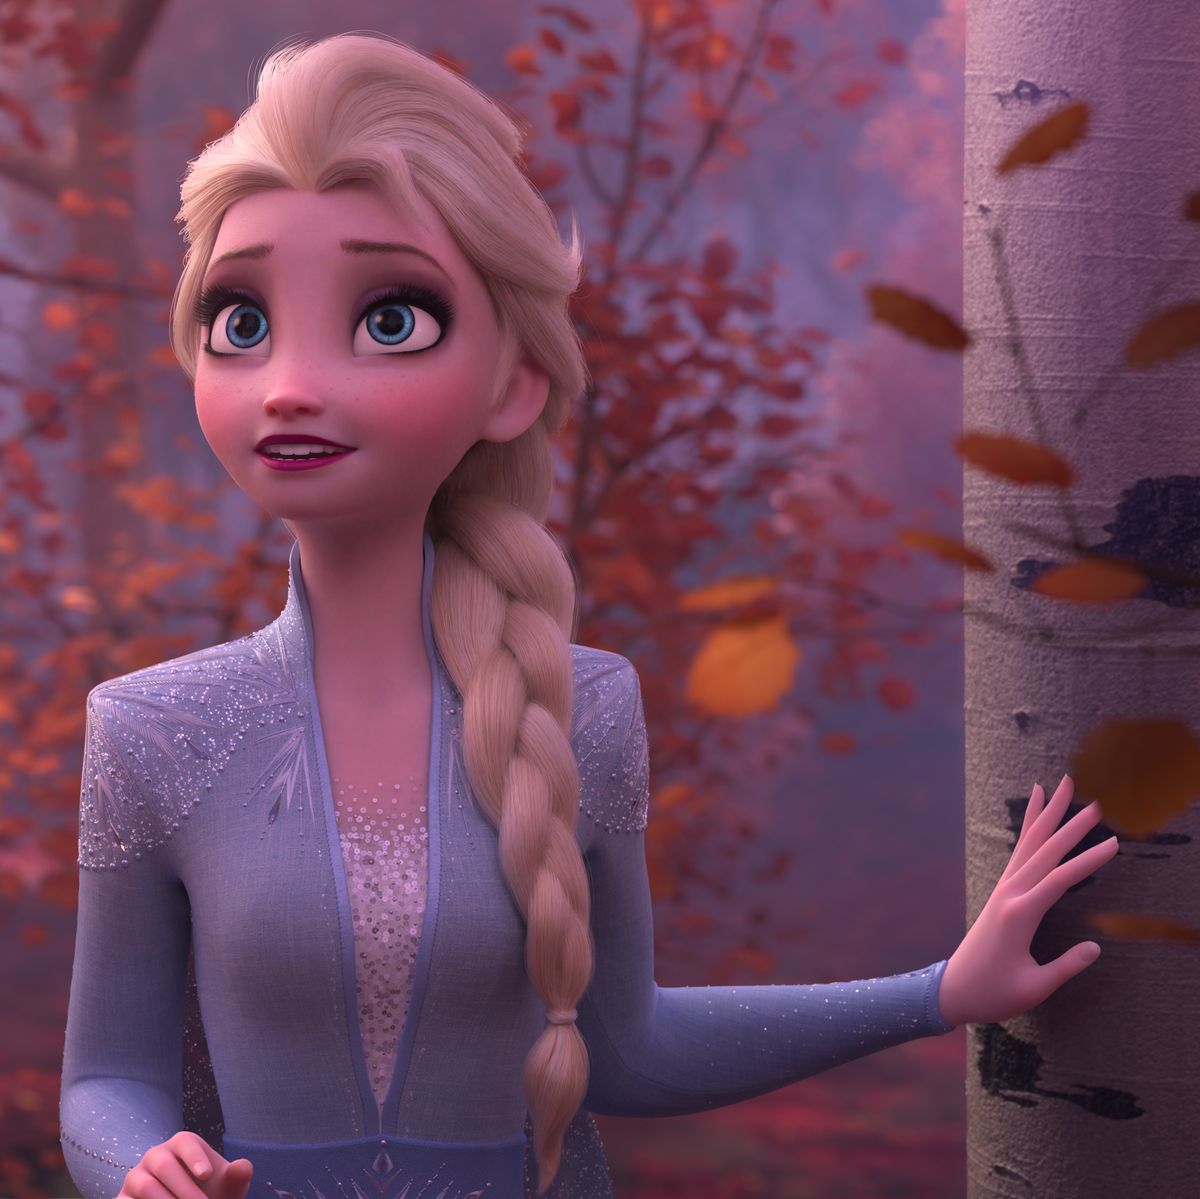 Does Elsa Get a Girlfriend in Frozen 2?